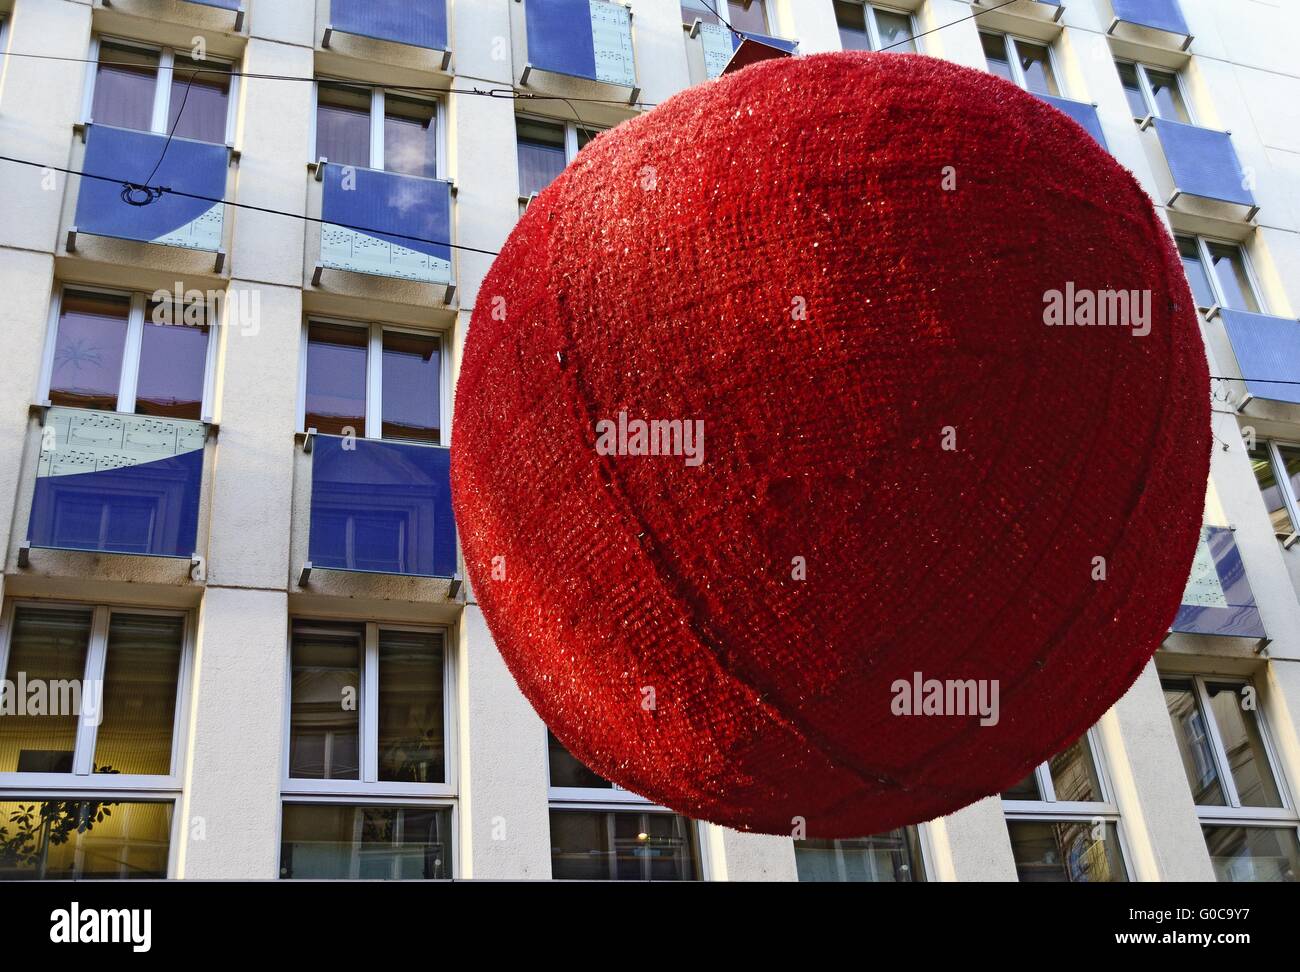 La foudre de noël en forme de big red globe Banque D'Images